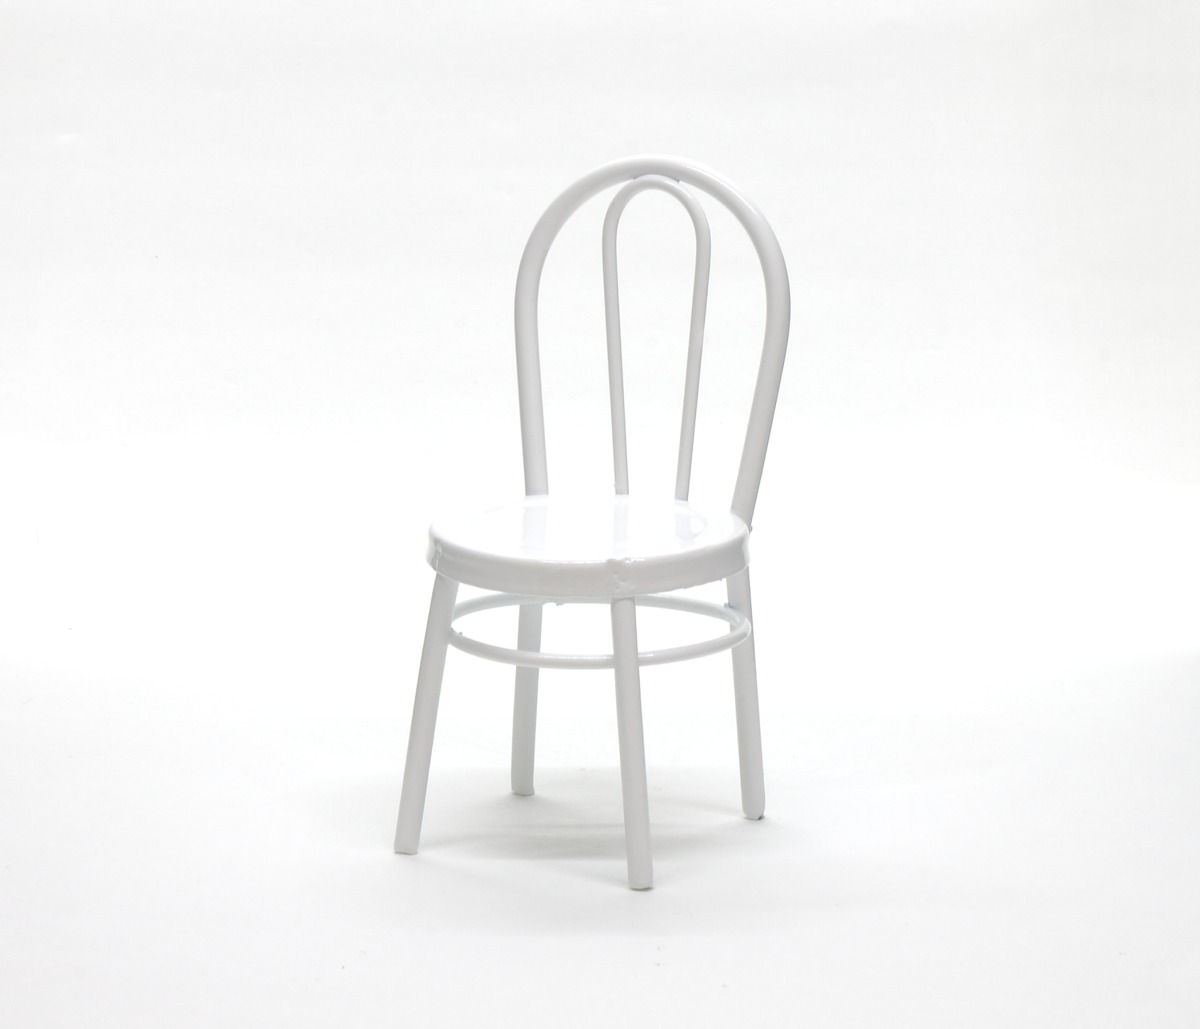 画像1: ミニチュア家具 メタルチェア 白 / 椅子 (1)